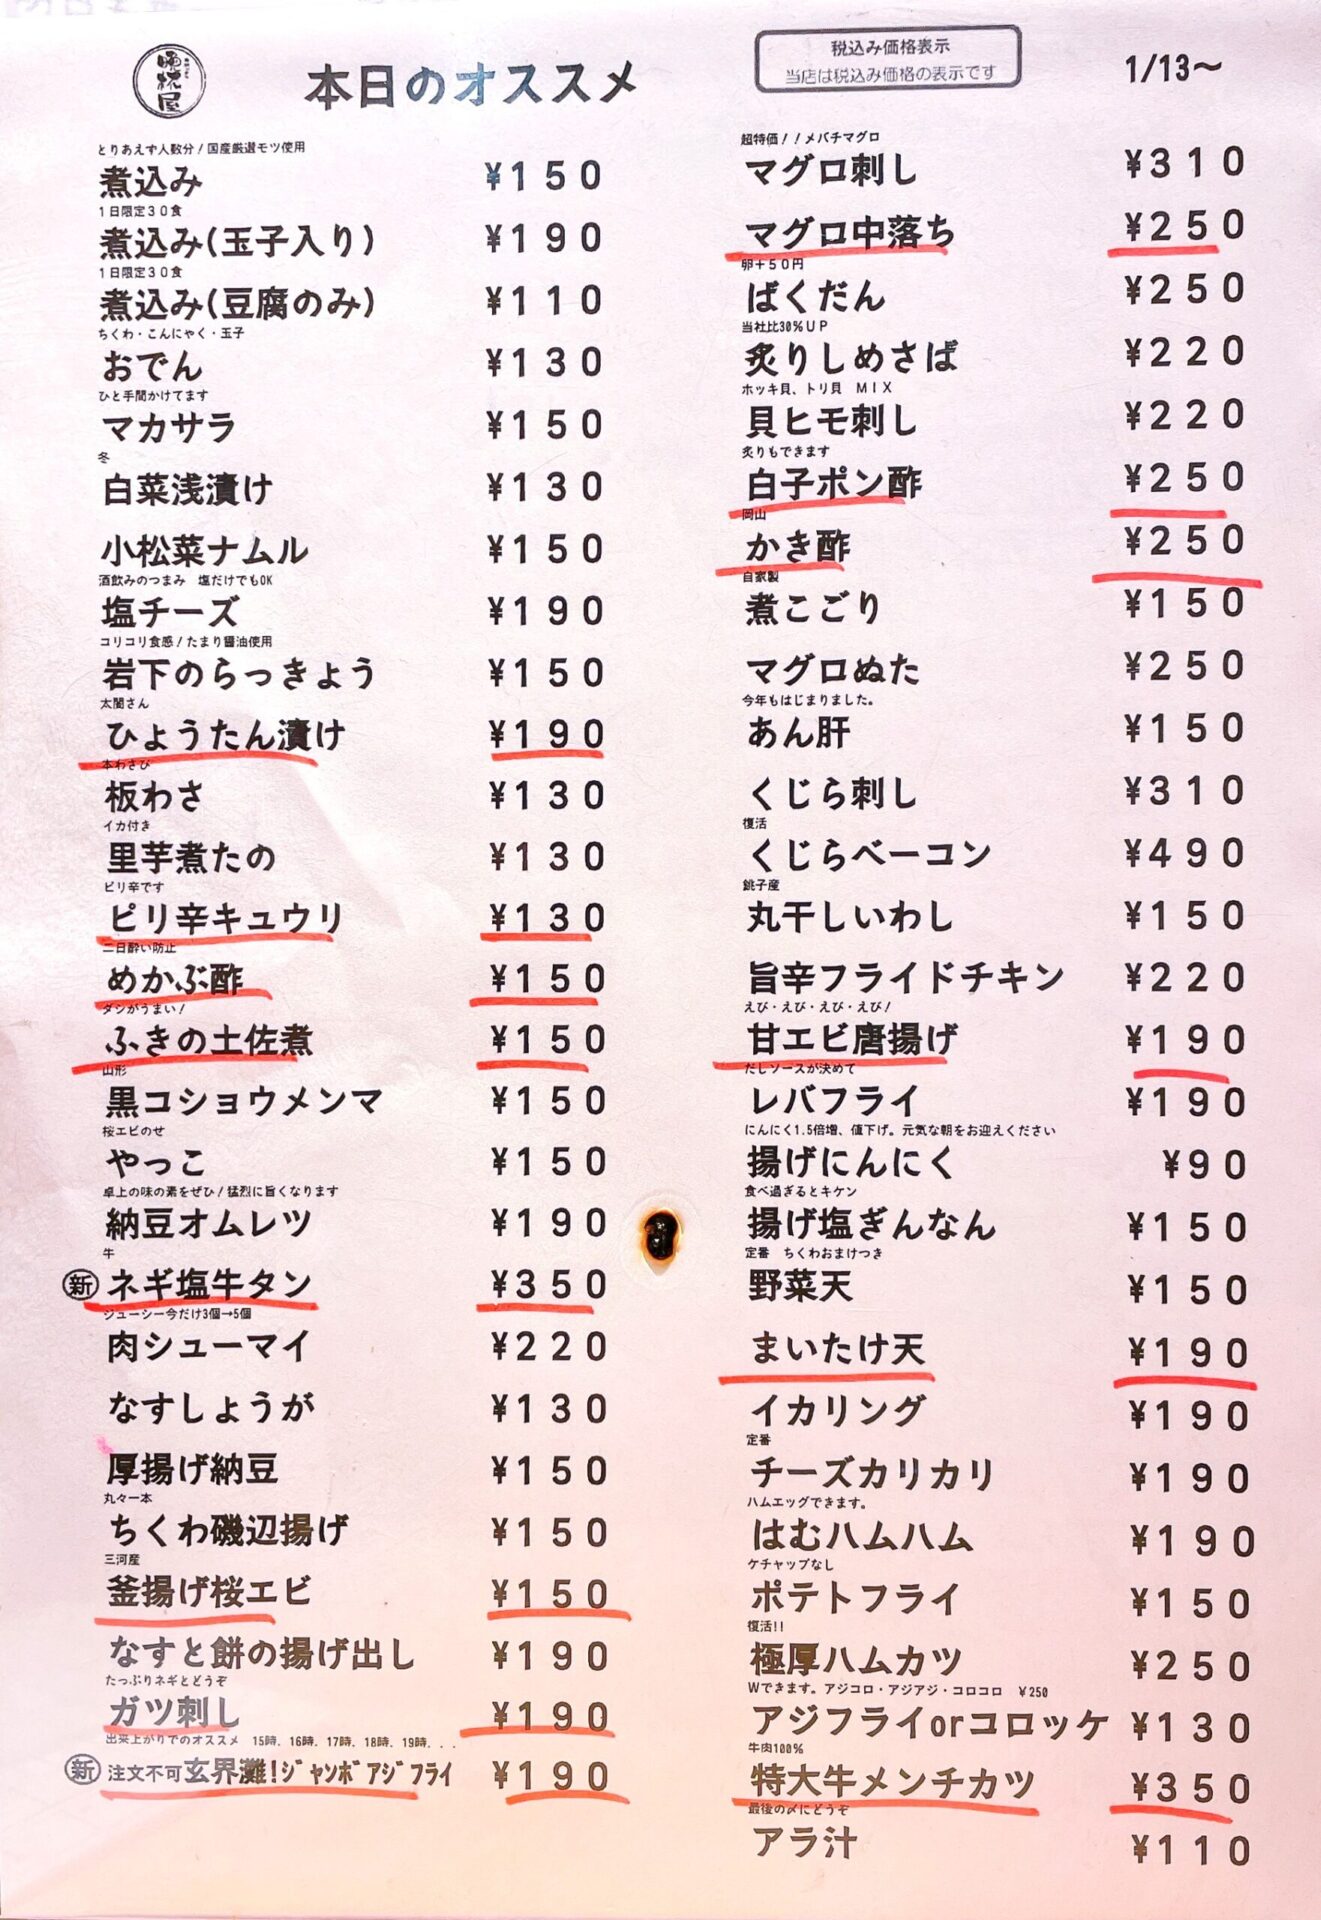 「立呑み晩杯屋 高円寺店」のフードメメニュー